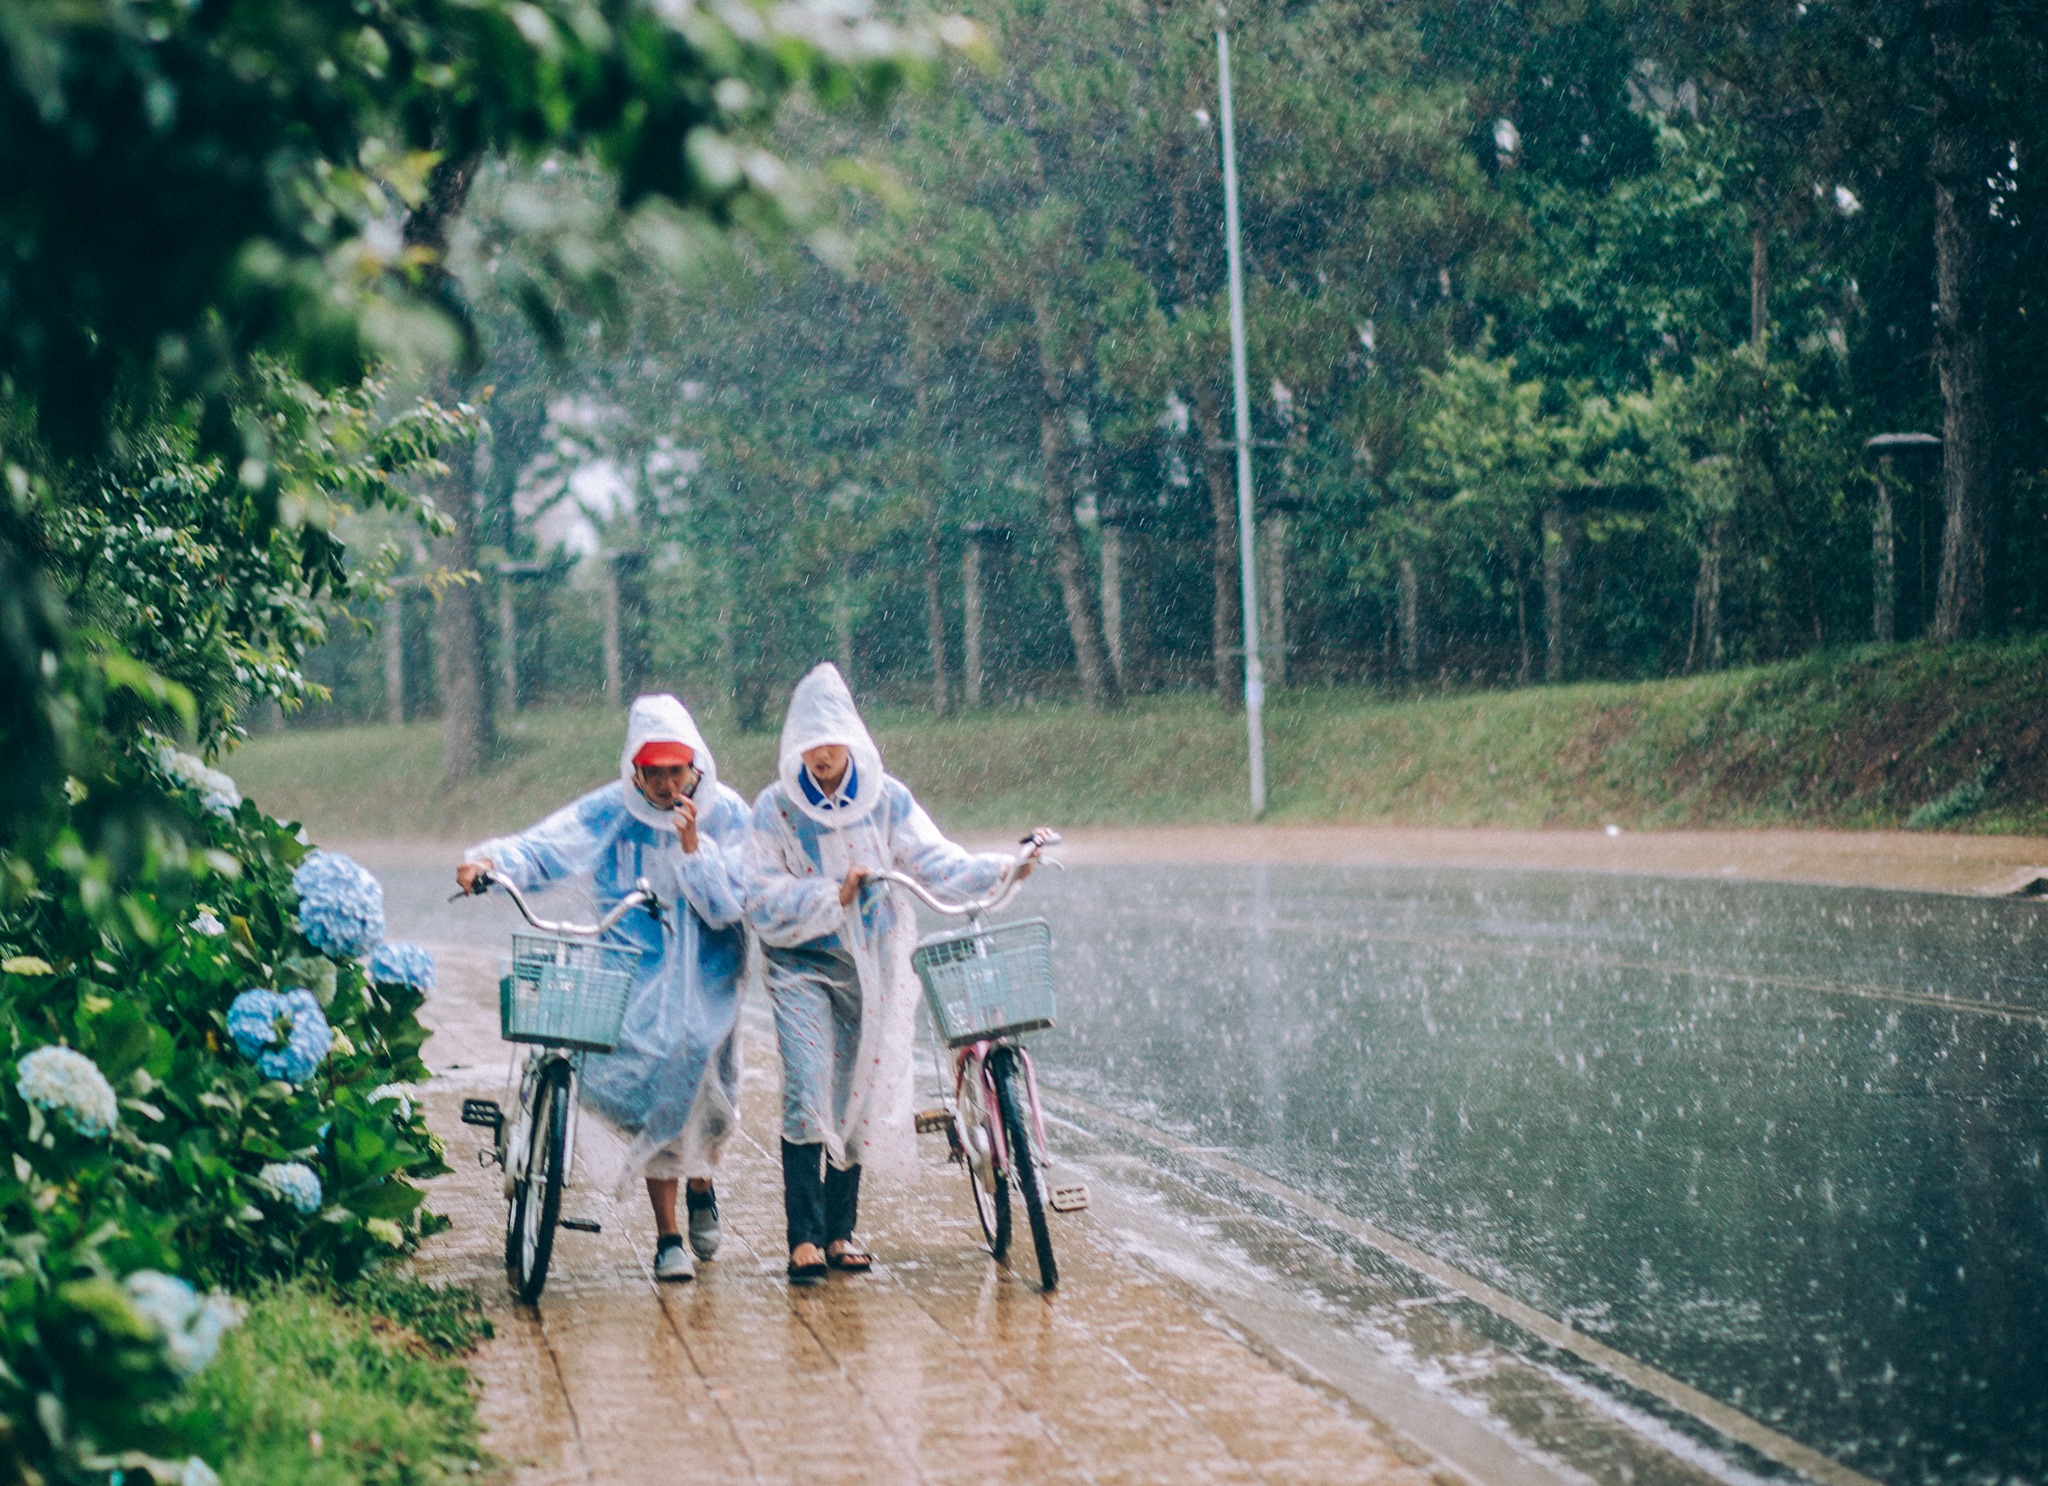 Ngày mưa Đà Lạt nên làm gì? Gợi ý các hoạt động cho bạn khi thăm phố núi mùa mưa.